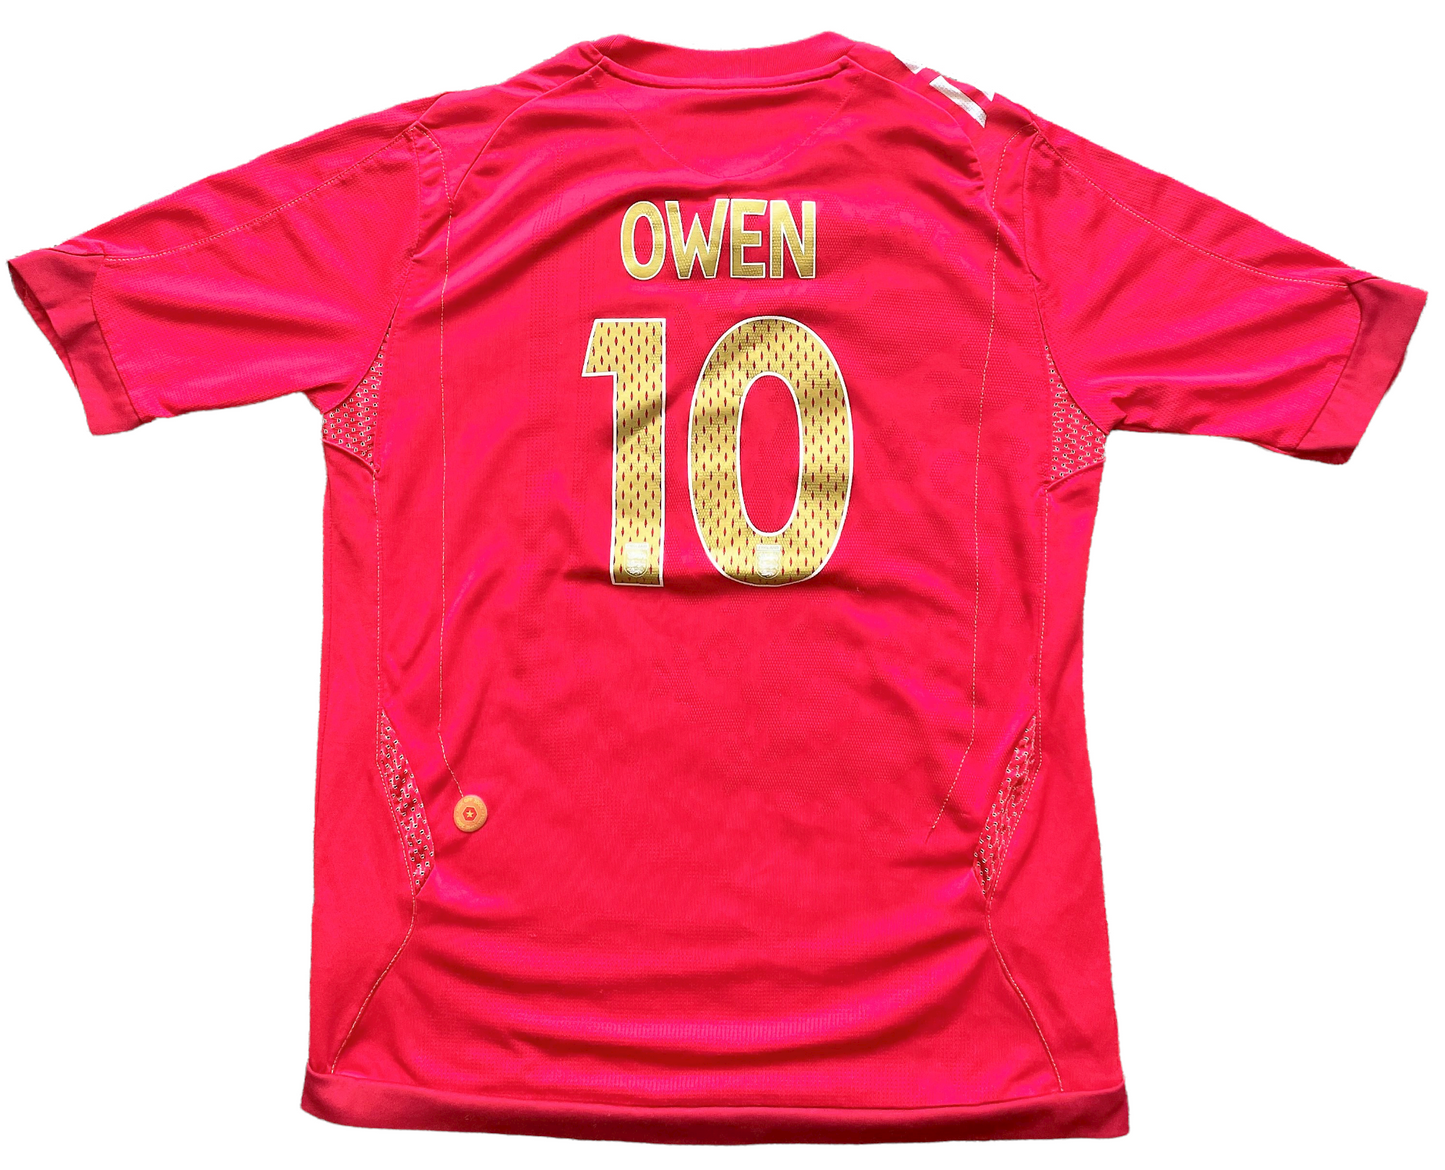 2006-08 England Away Shirt OWEN #10 (very good) Large Boys